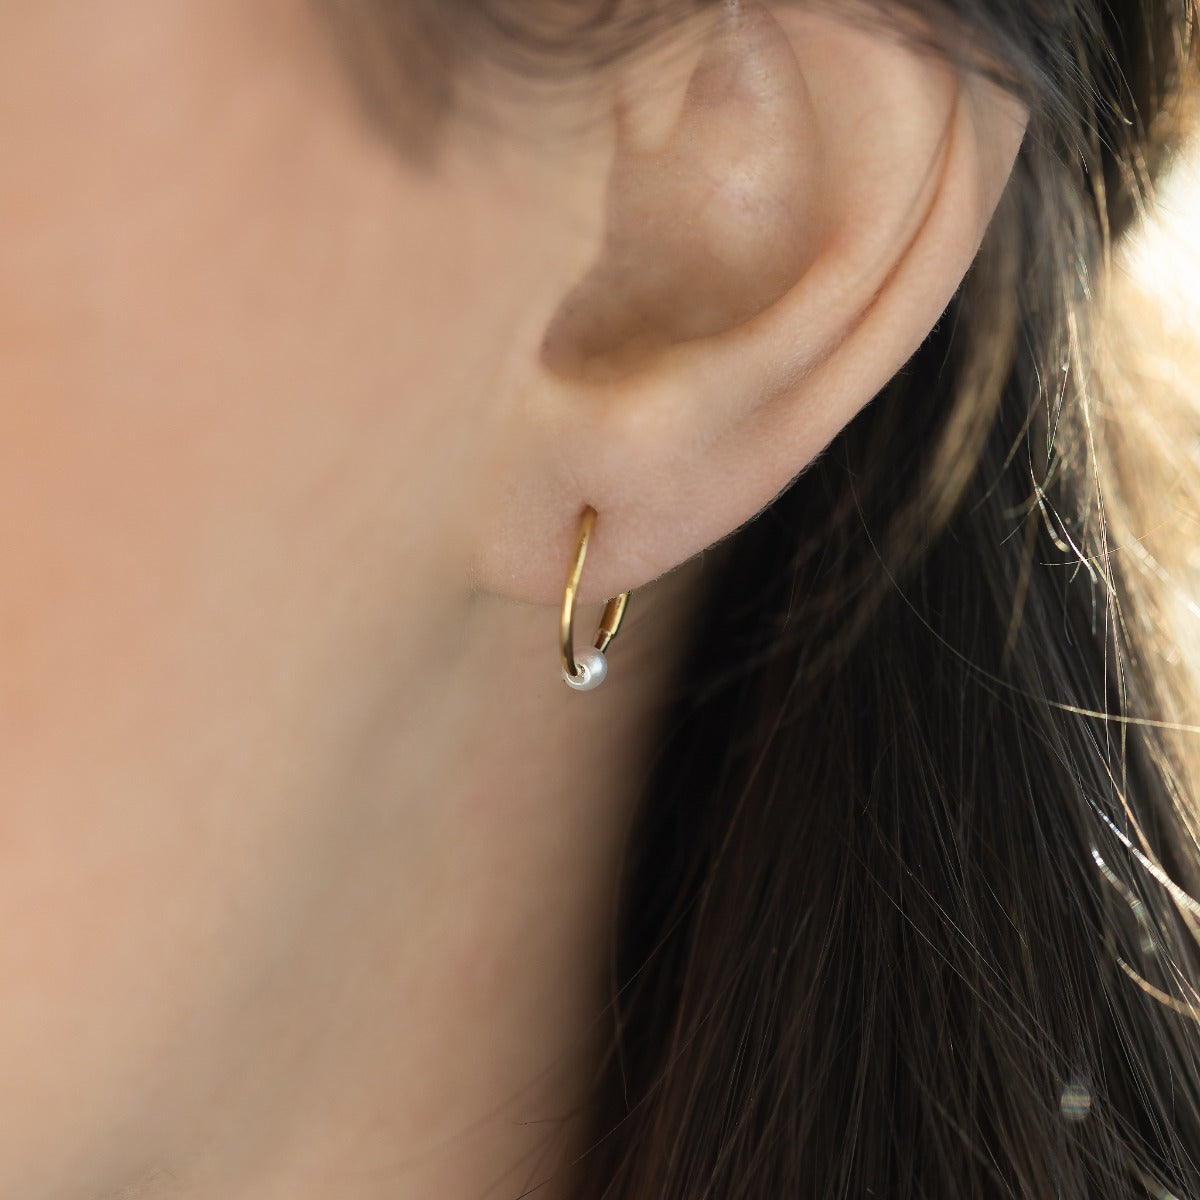 Mini boucles d'oreilles dorées dormeuses 10mm avec perle 2.5 Mm en